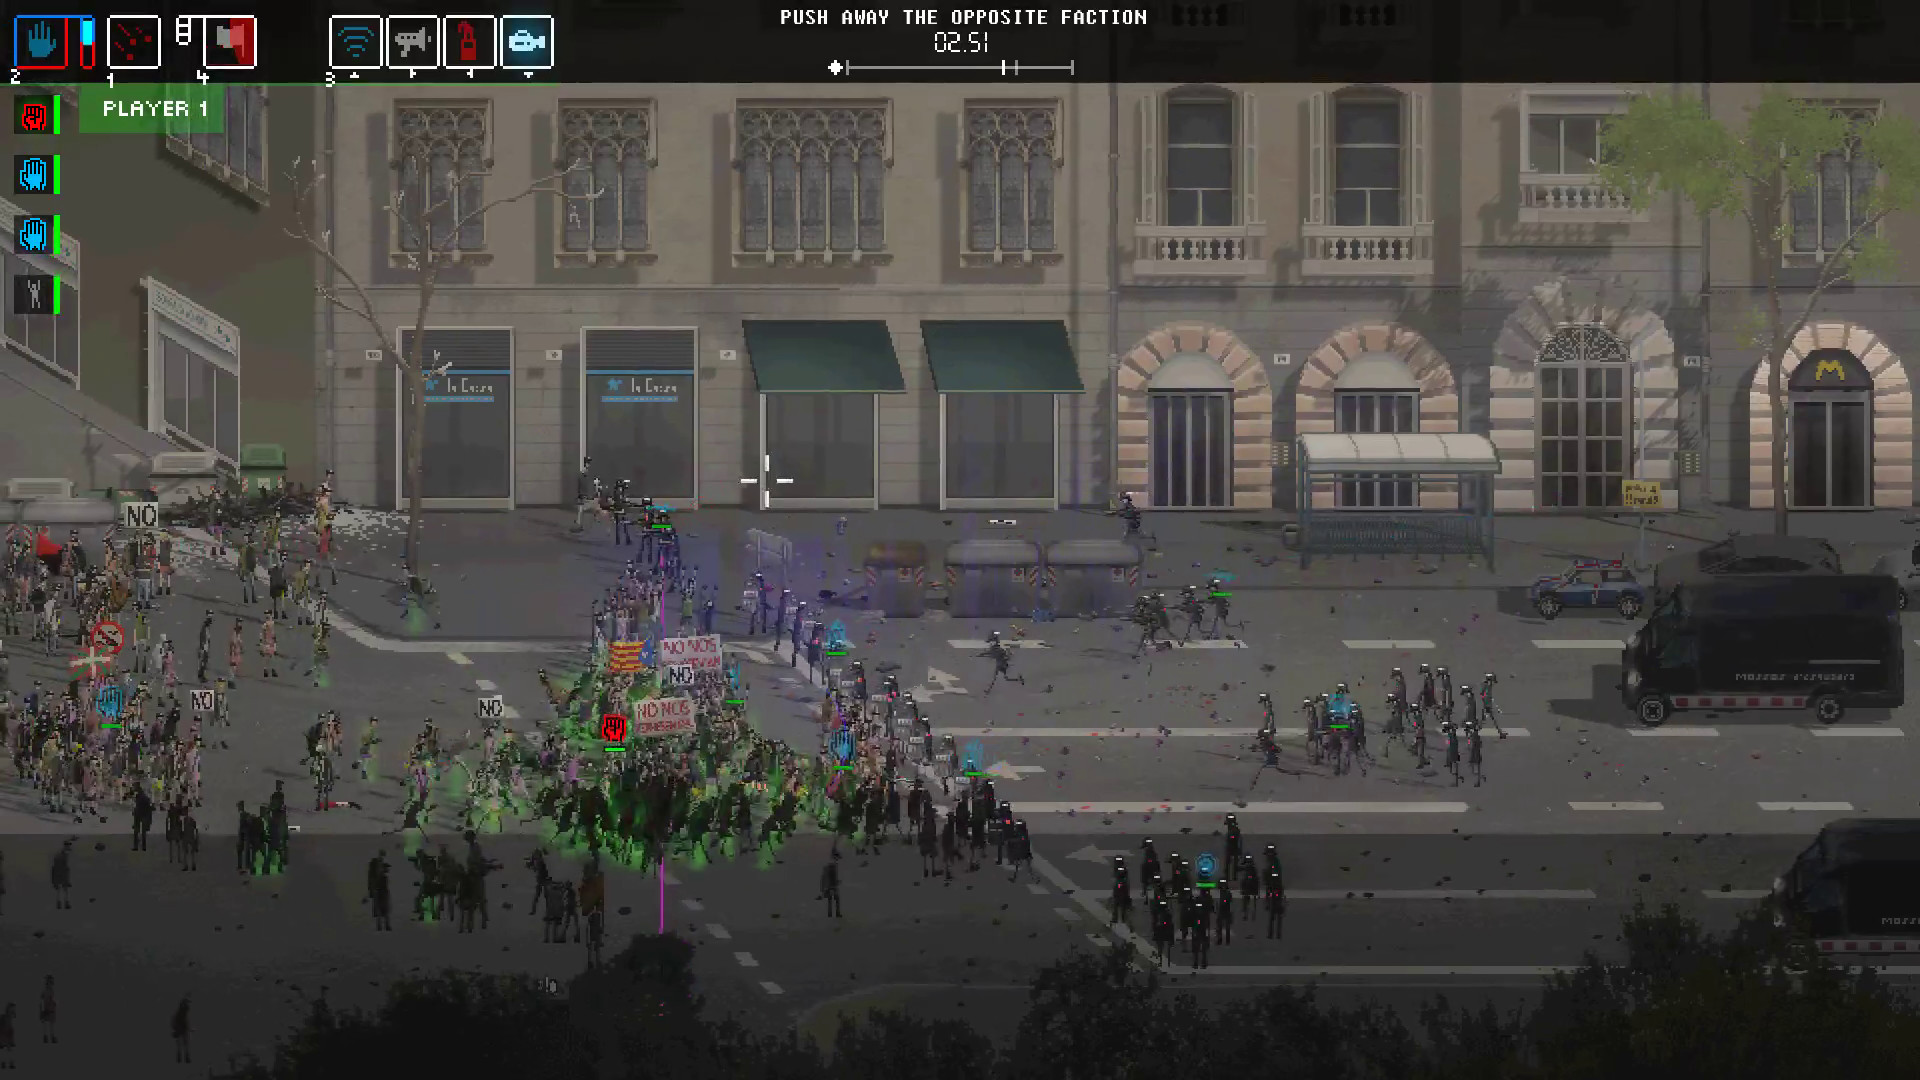 Riot Civil Unrest On Steam